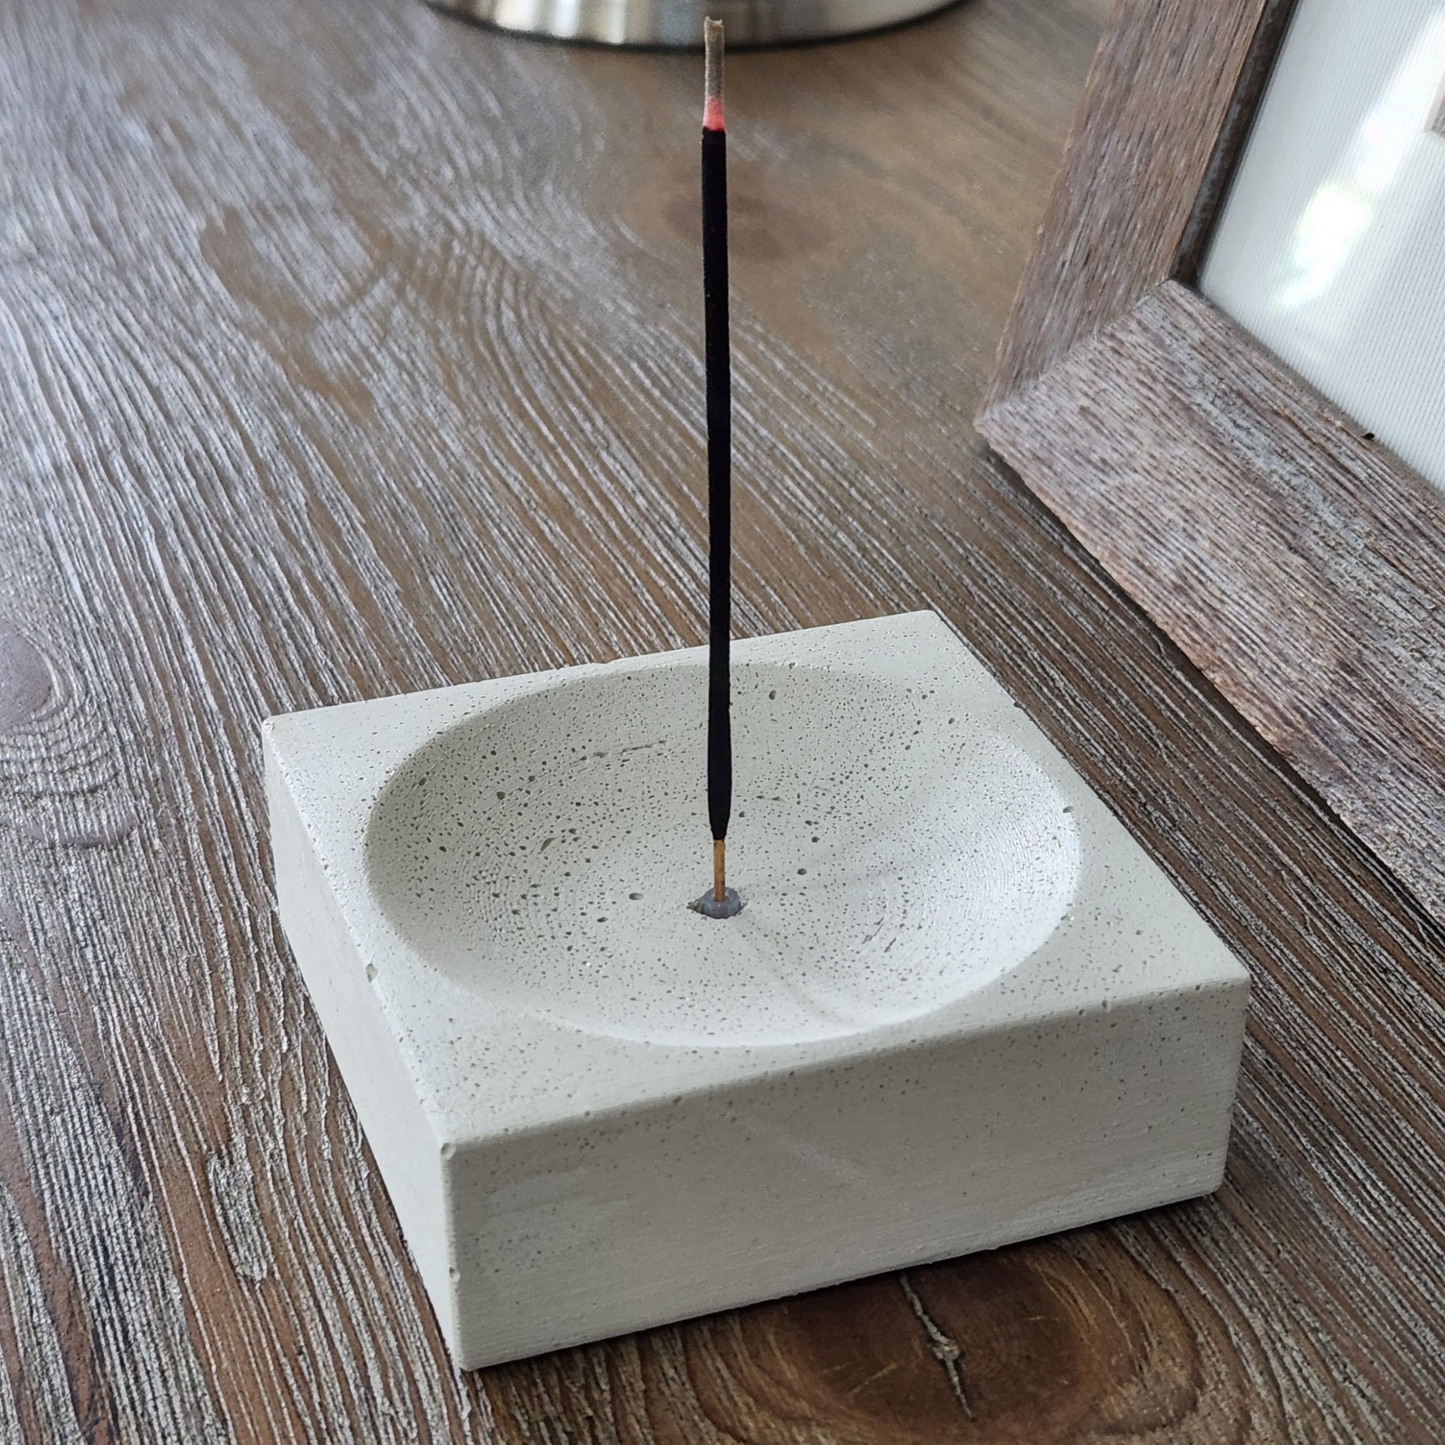 3.5"x1.25" Square Incense Holder | Concrete